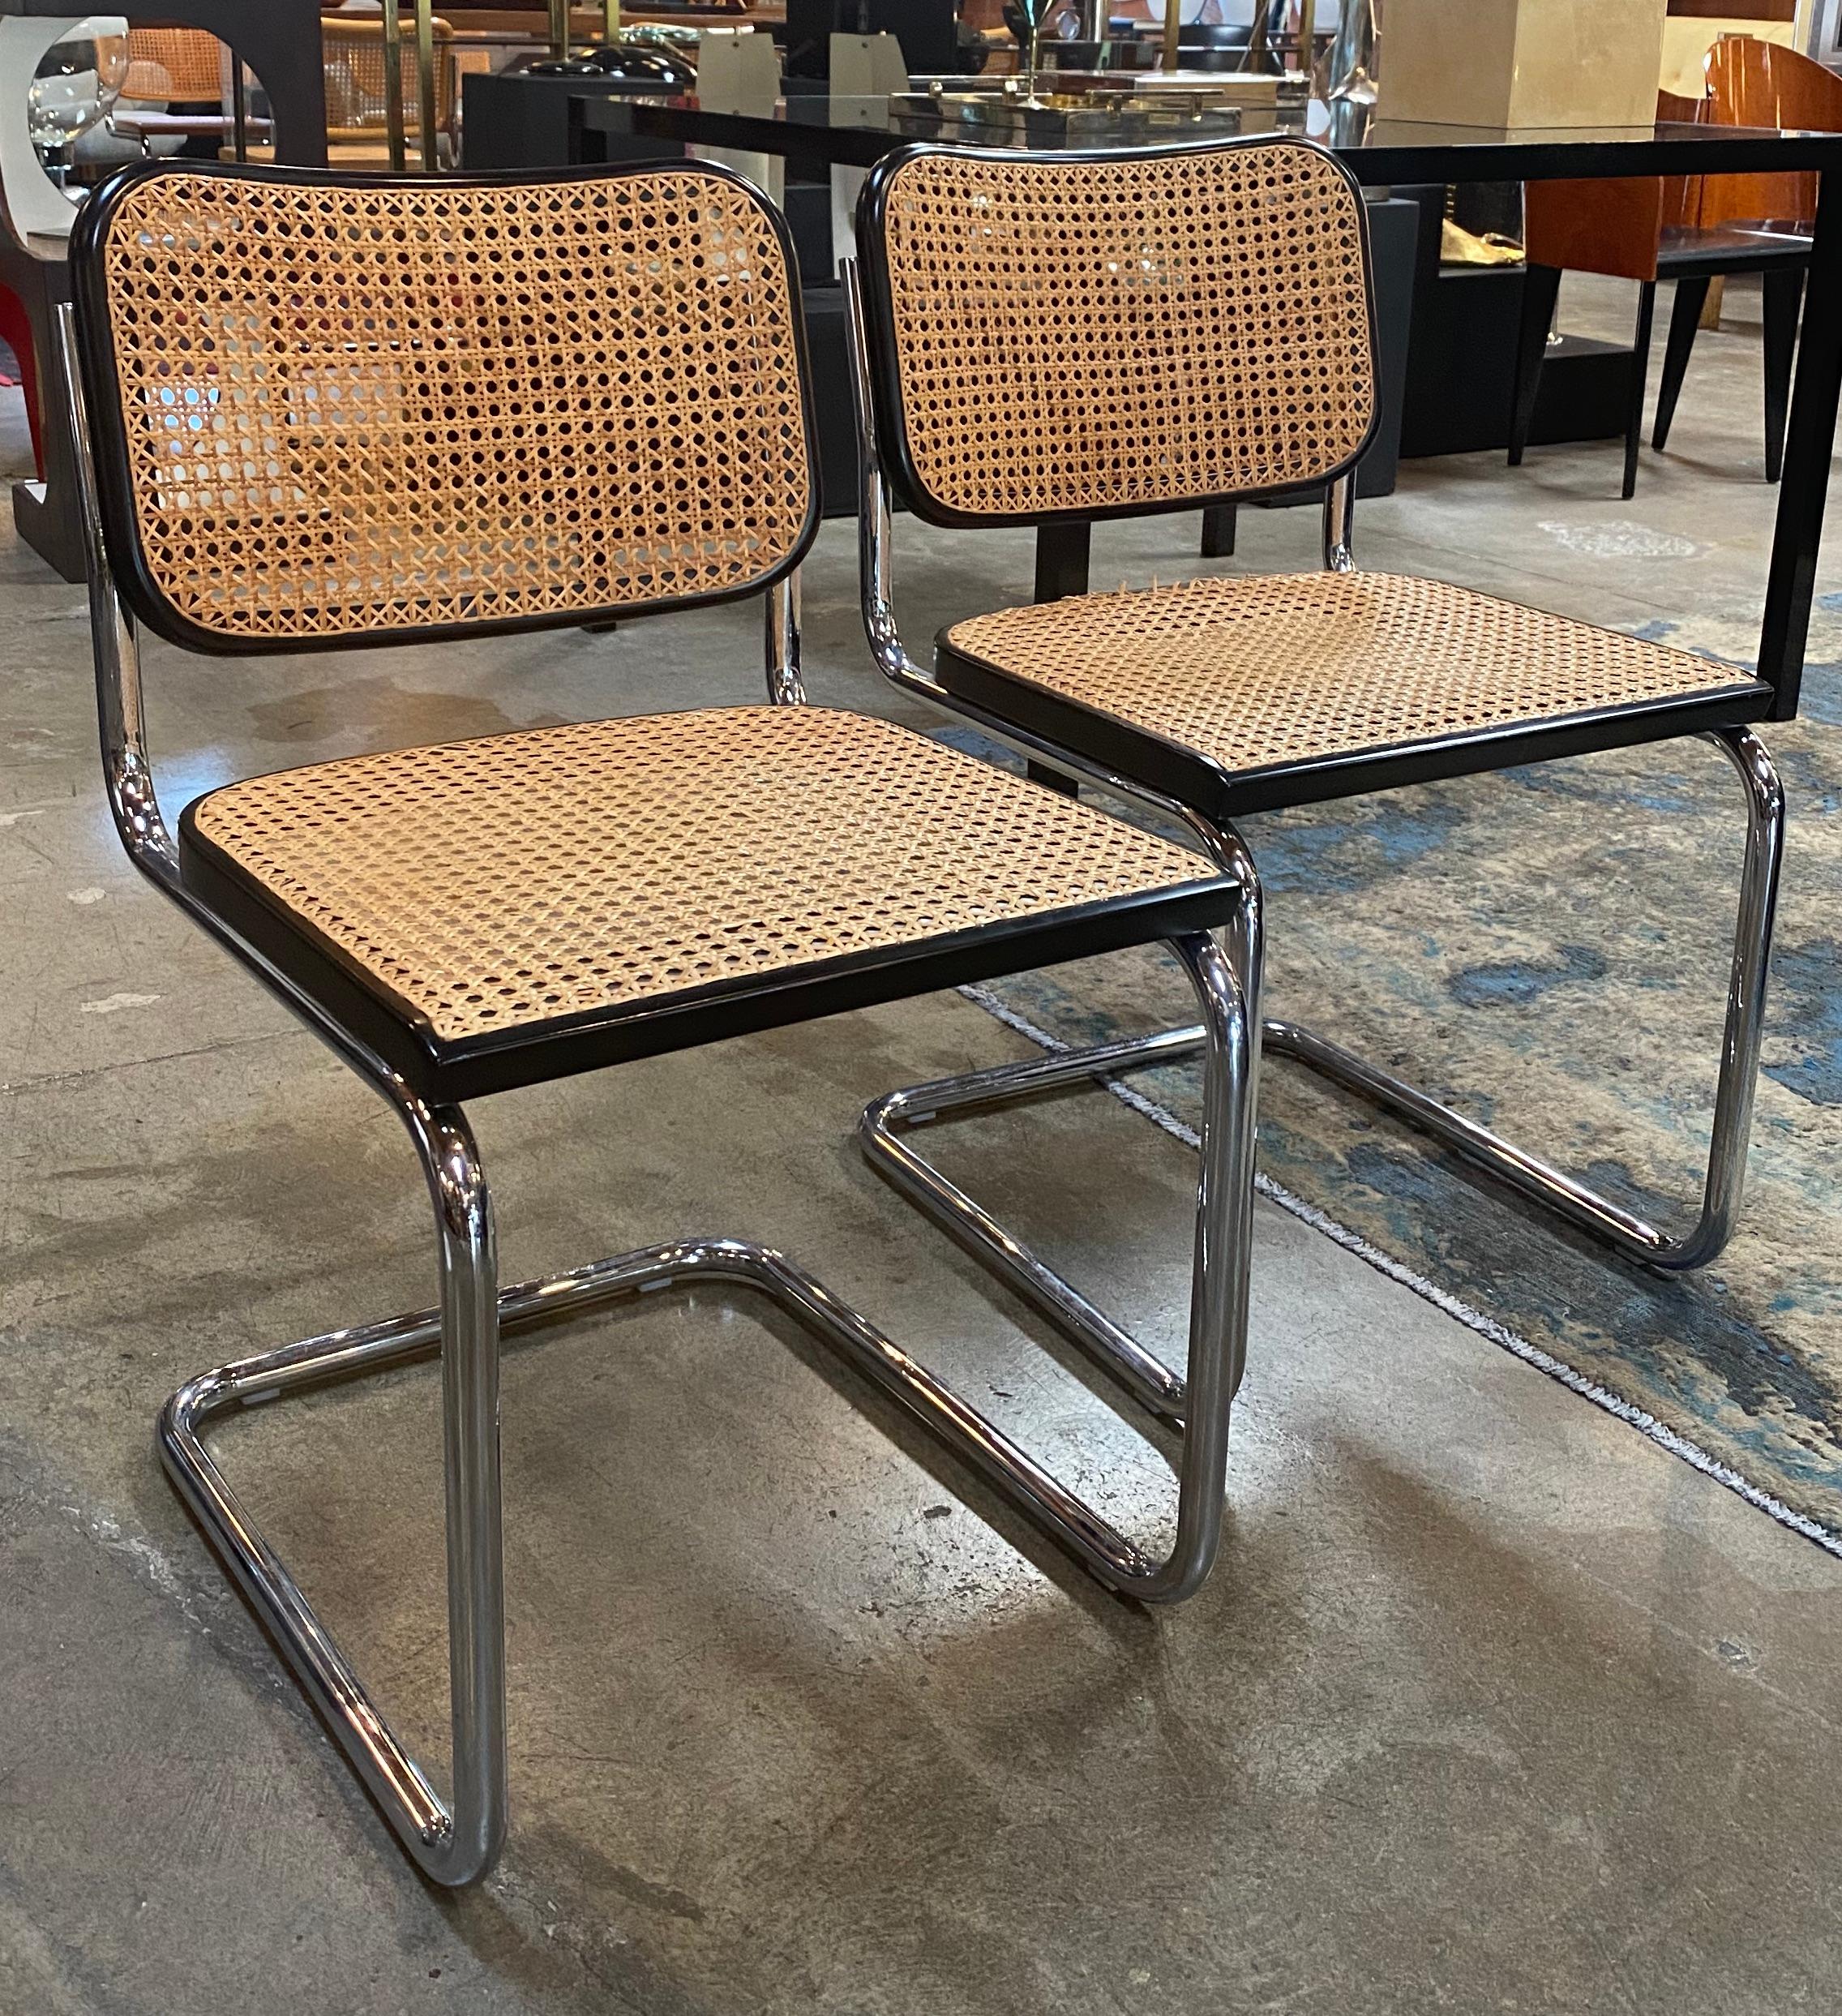 Ensemble de 2 chaises de salle à manger Cane Cesca ! magnifique

La chaise Cesca est une chaise conçue en 1928 par Marcel Breuer, qui utilise de l'acier tubulaire. Il a été nommé Cesca en hommage à la fille adoptive de Breuer, Francesca (surnommée